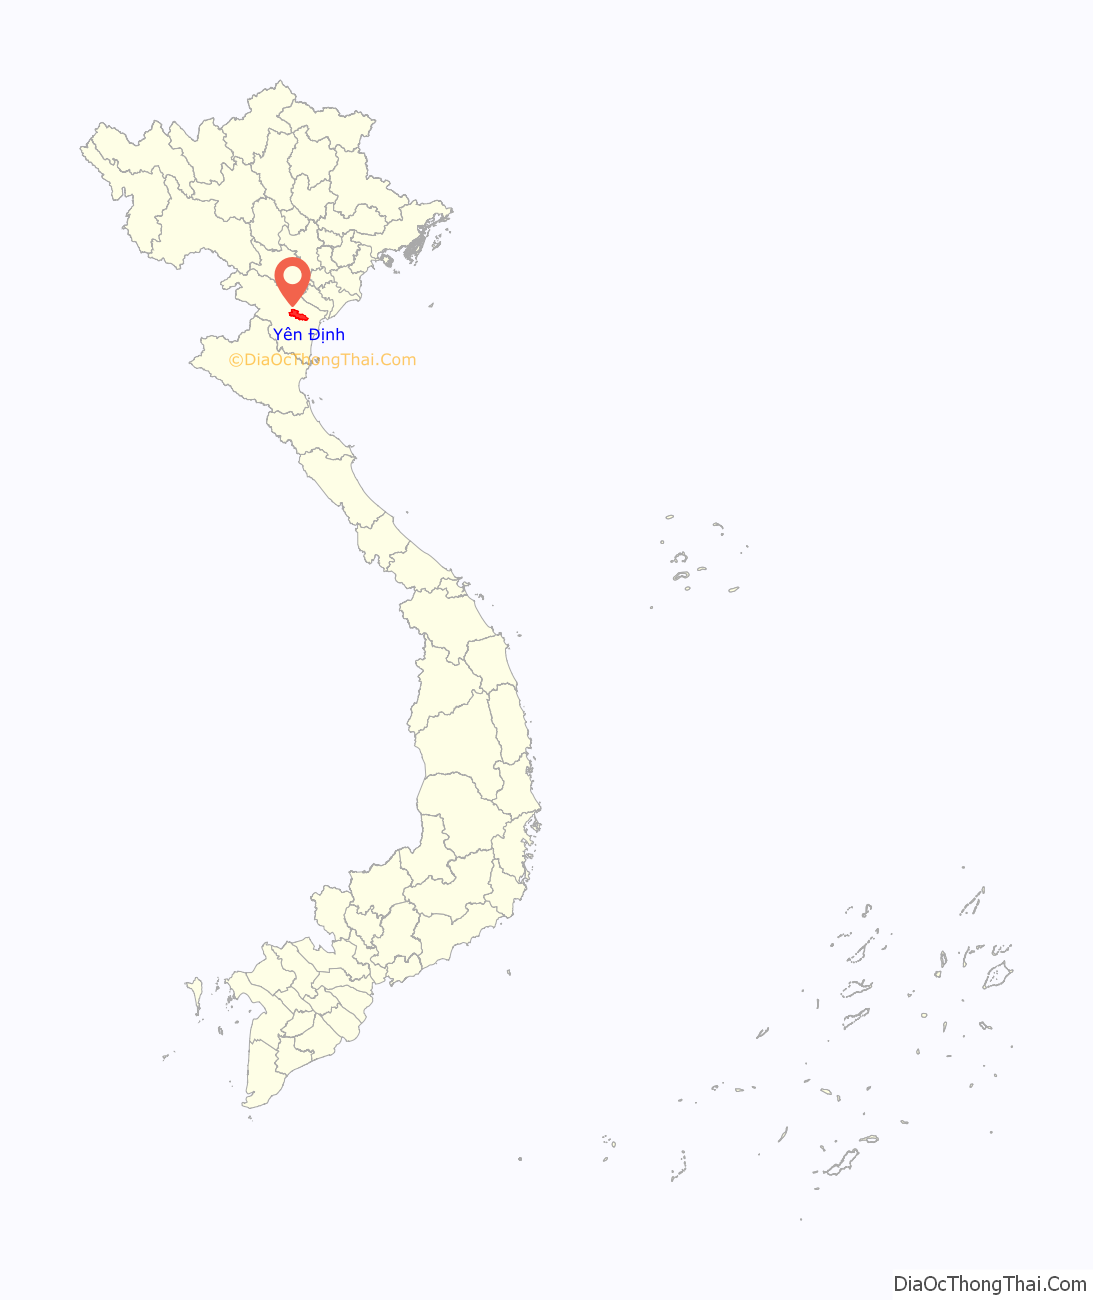 Huyện Yên Định ở đâu? Vị trí của huyện Yên Định